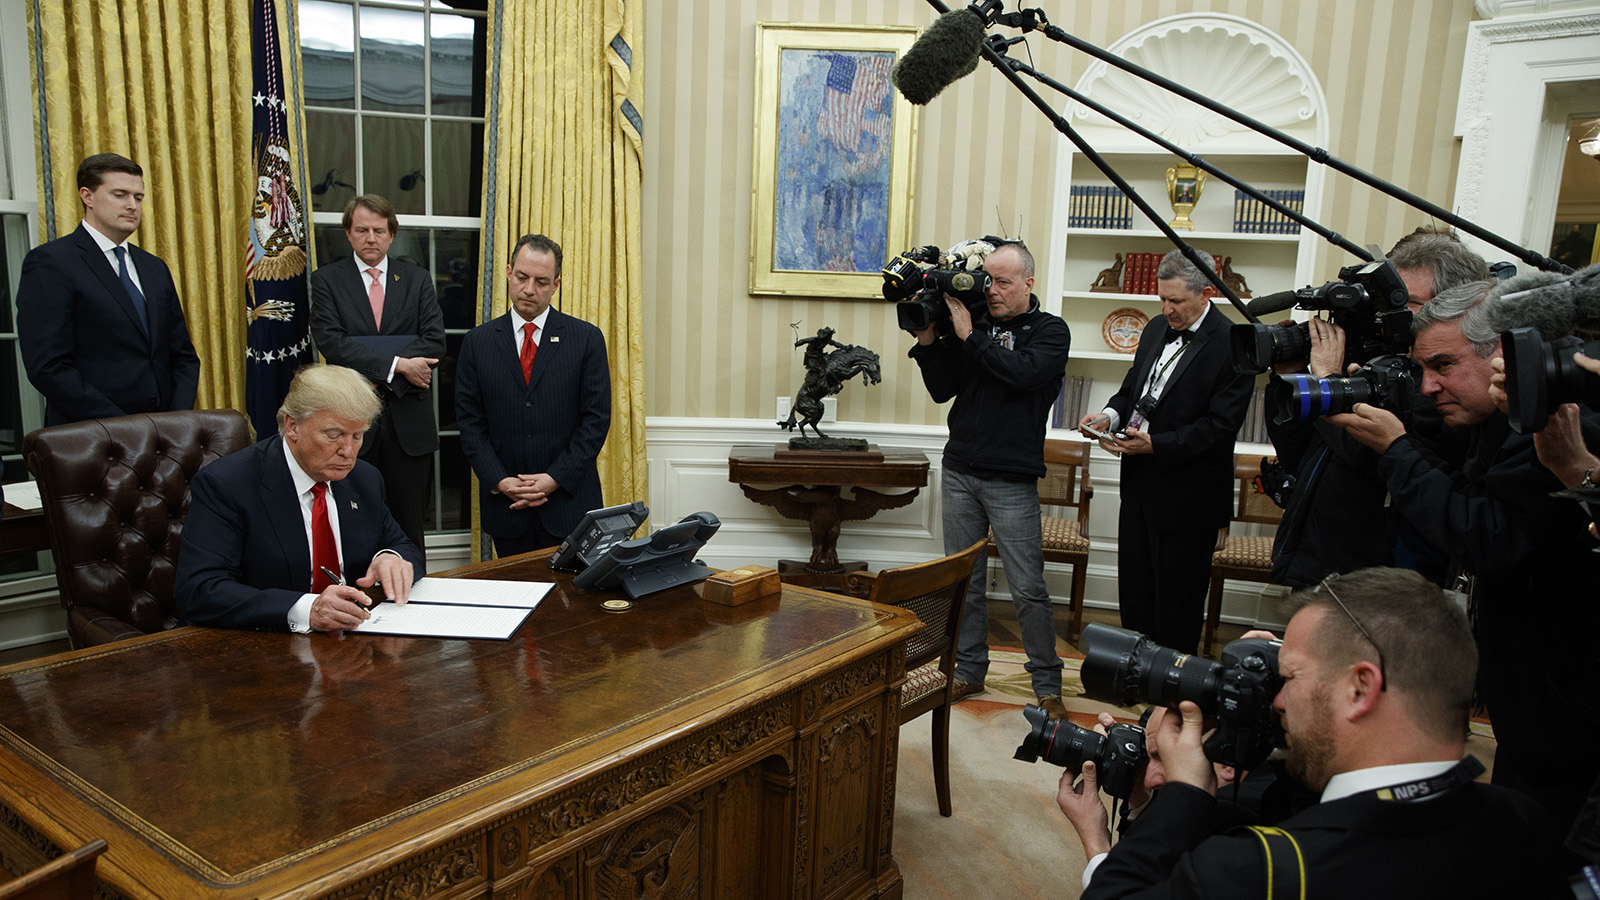 נשיא ארצות הברית דונלד טראמפ ביומו הראשון בתפקיד, במשרד הסגלגל (צילום: Evan Vucci / סוכנות AP).